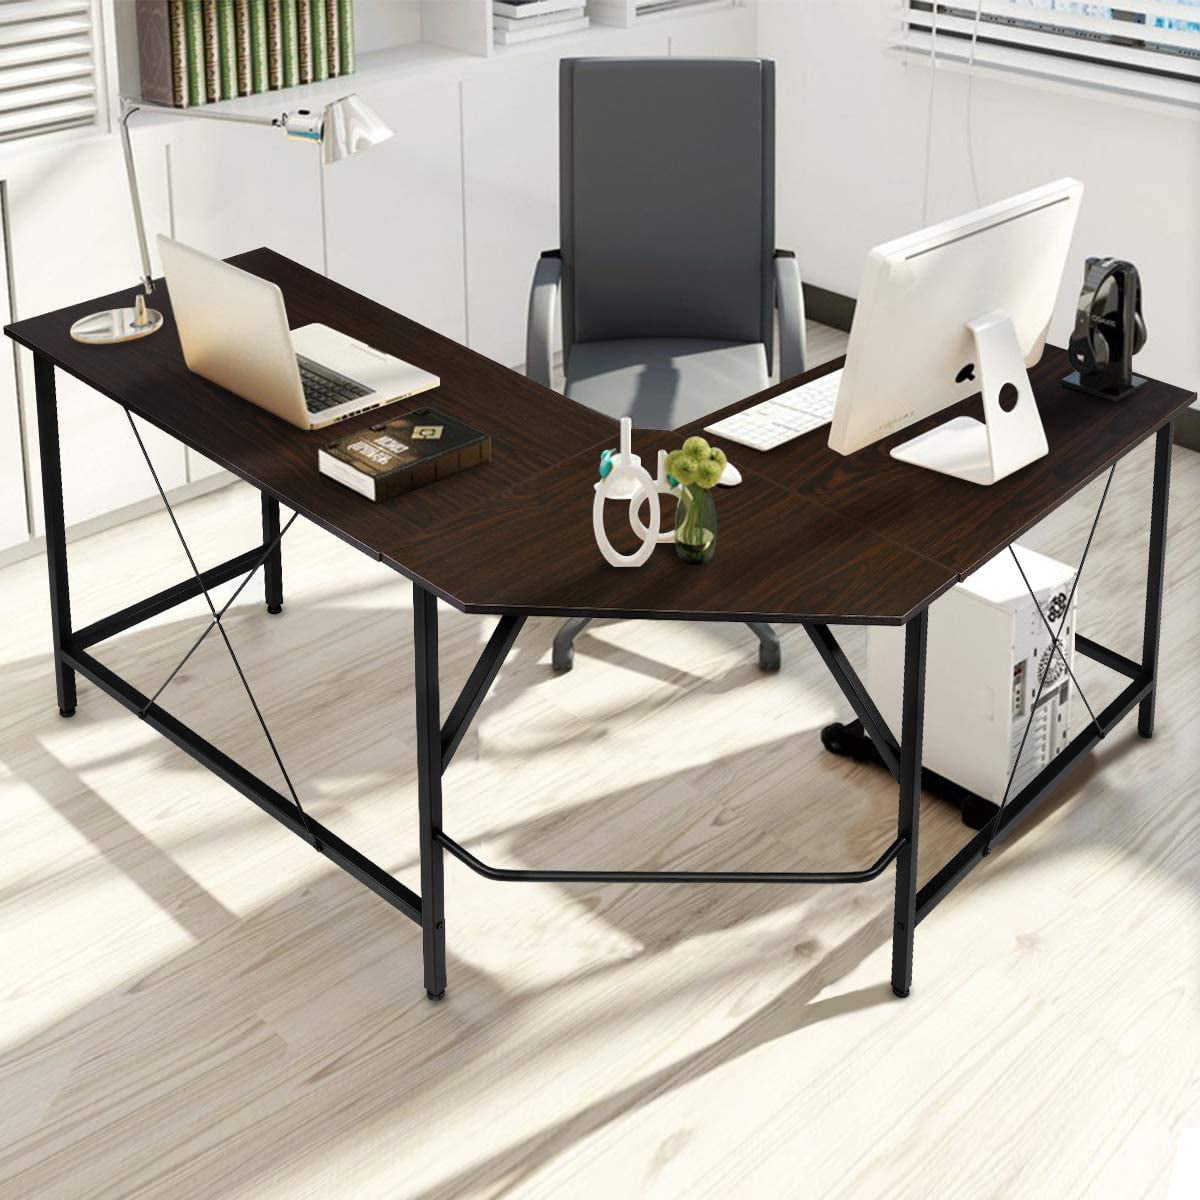 KINGSO L Shaped Computer Desk with CPU Stand，65 Modern Corner Desks for Home Office Workstation Wood /& Metal Corner Desk Laptop Writing Desk Table 64 x 47 x 30, Wood